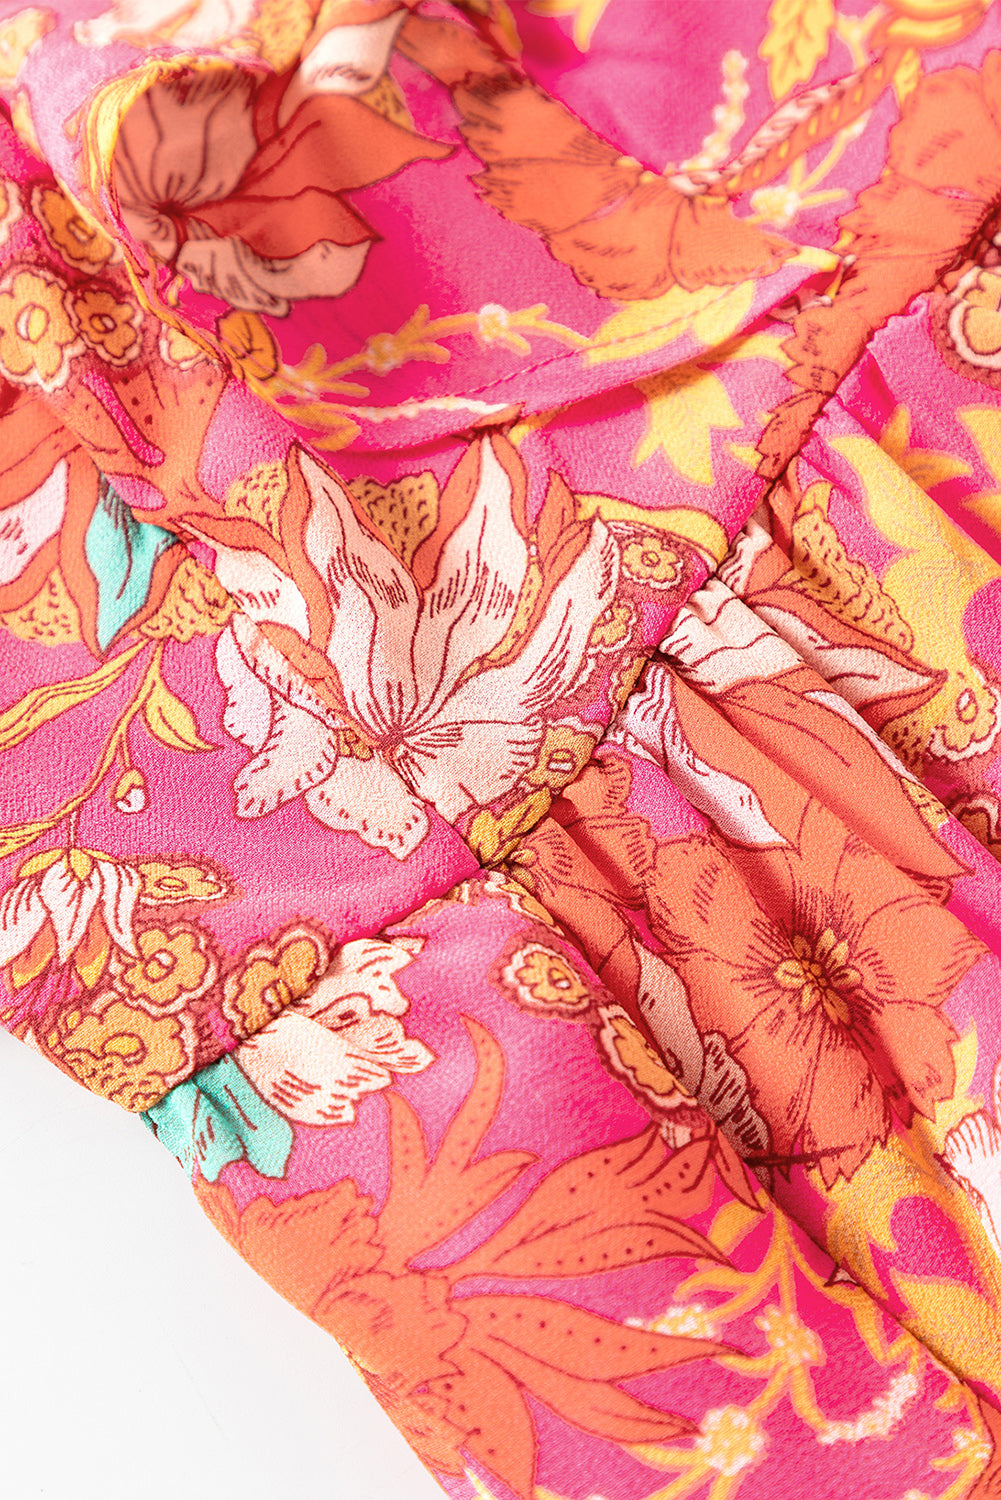 Rosa geblümtes, gestuftes Kleid mit eckigem Ausschnitt und Rüschenärmeln